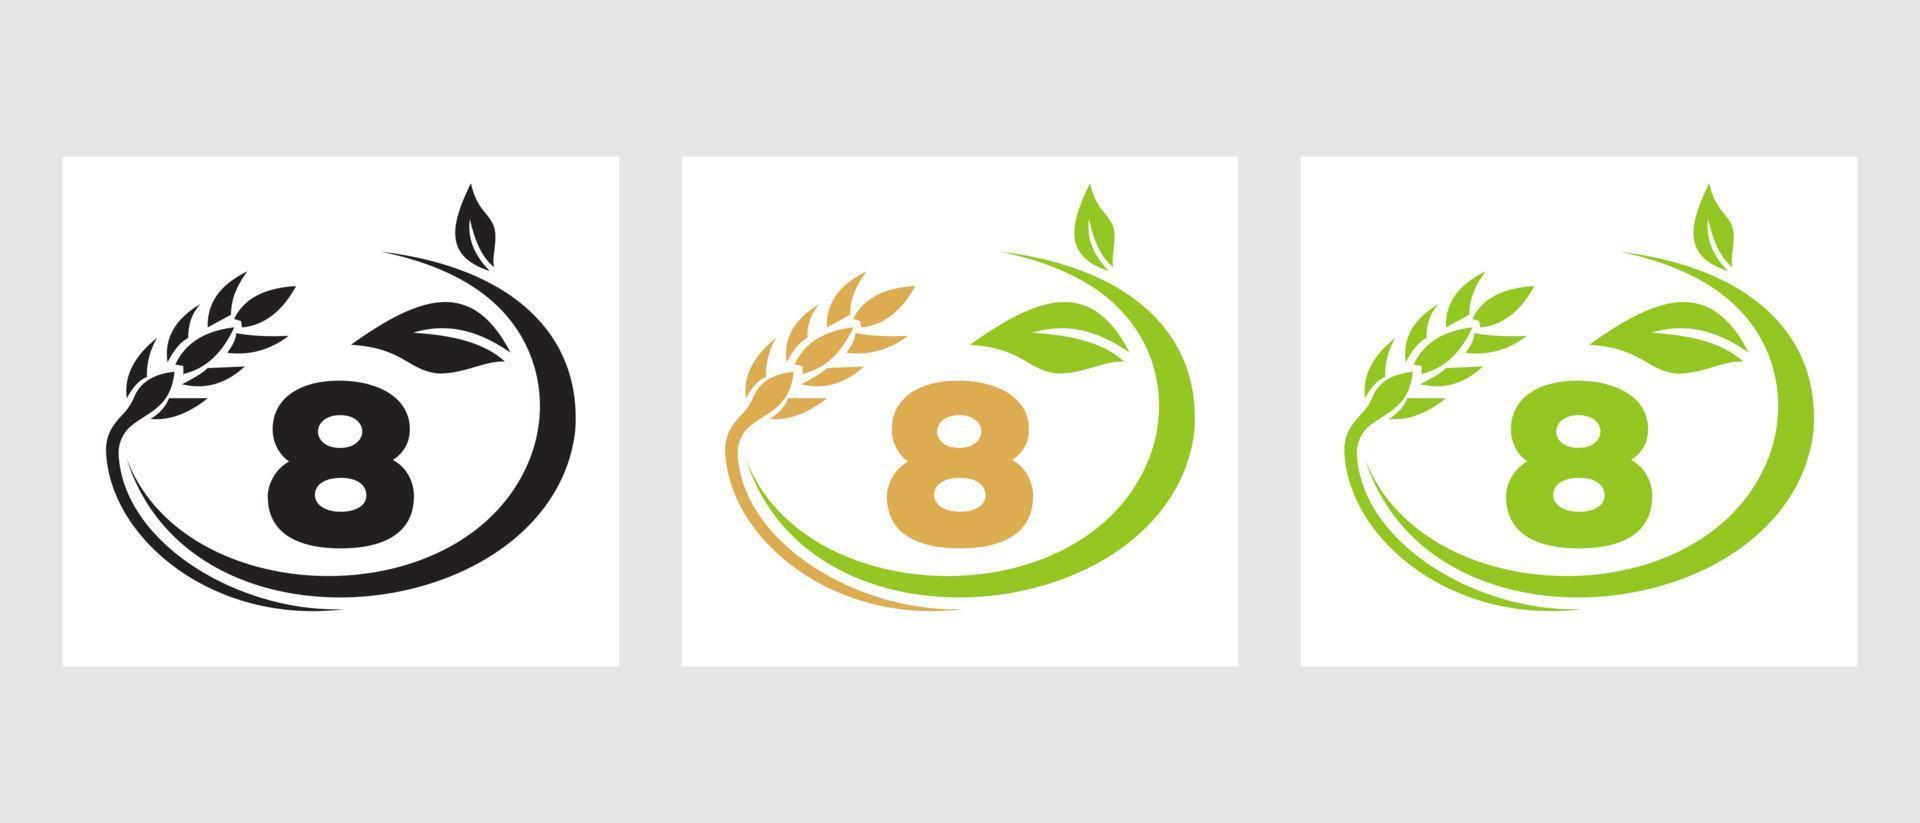 logotipo de la agricultura de la letra 8. agronegocios, plantilla de diseño de granjas ecológicas vector